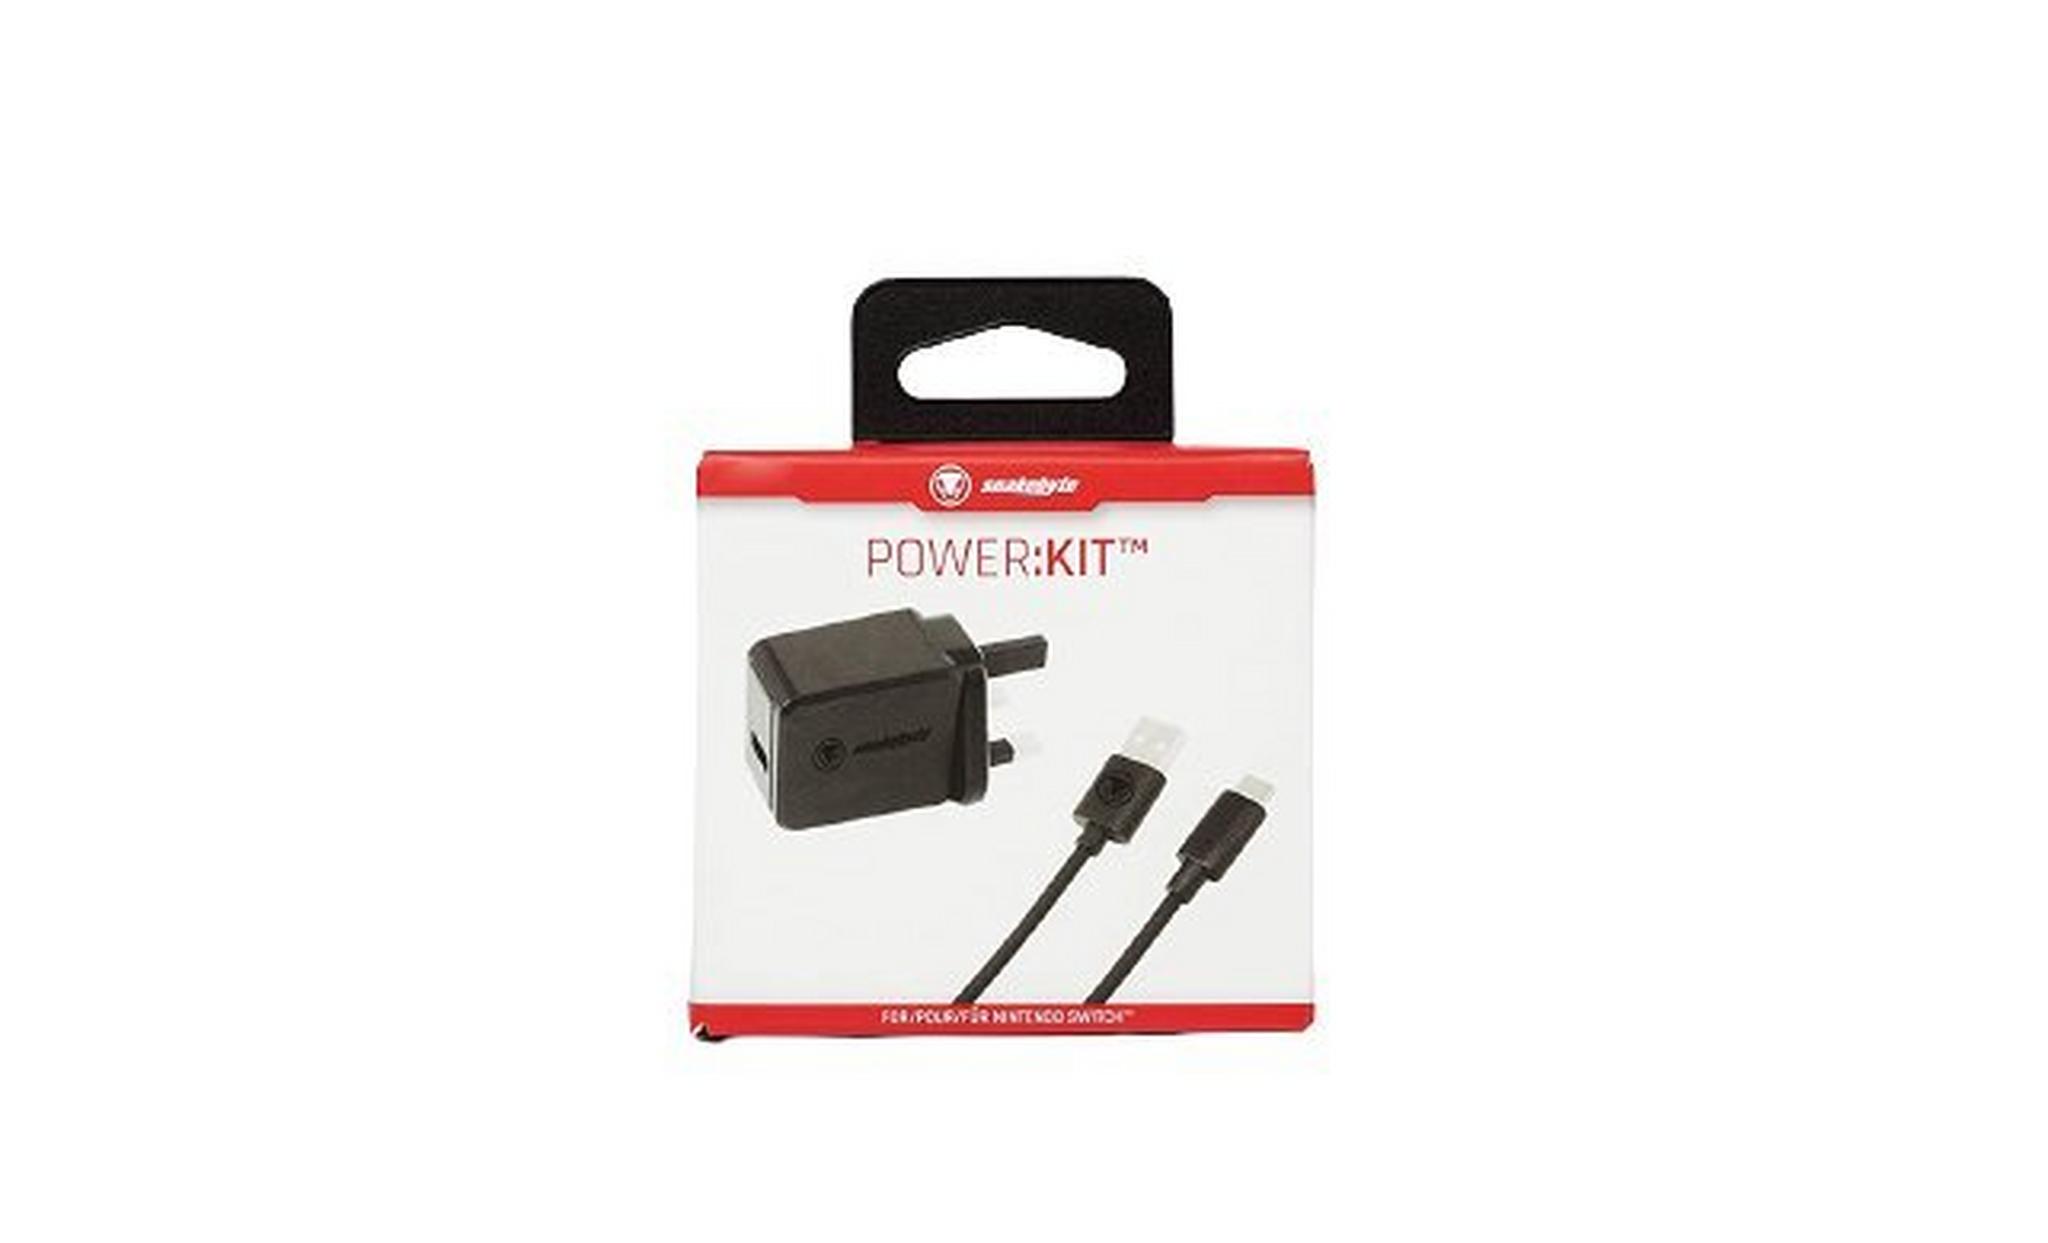 Snakebyte Power Kit for Nintendo Switch Tablet - S911132